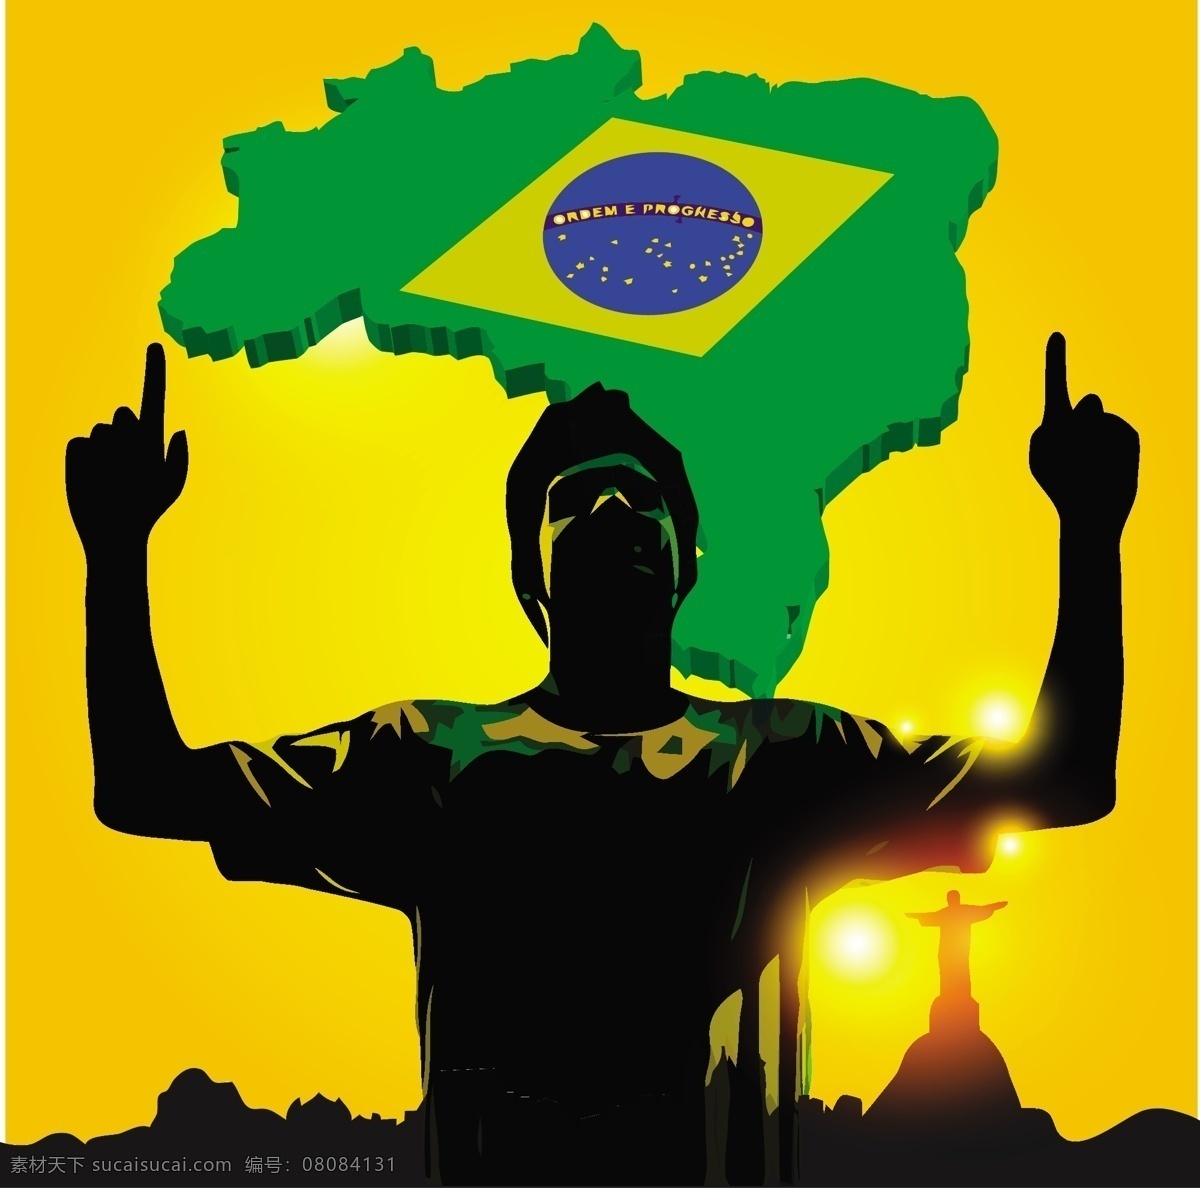 足球 运动员 巴西 地图 模板下载 巴西地图 巴西国旗 球员 世界杯 足球赛事 足球比赛 体育运动 生活百科 矢量素材 黄色